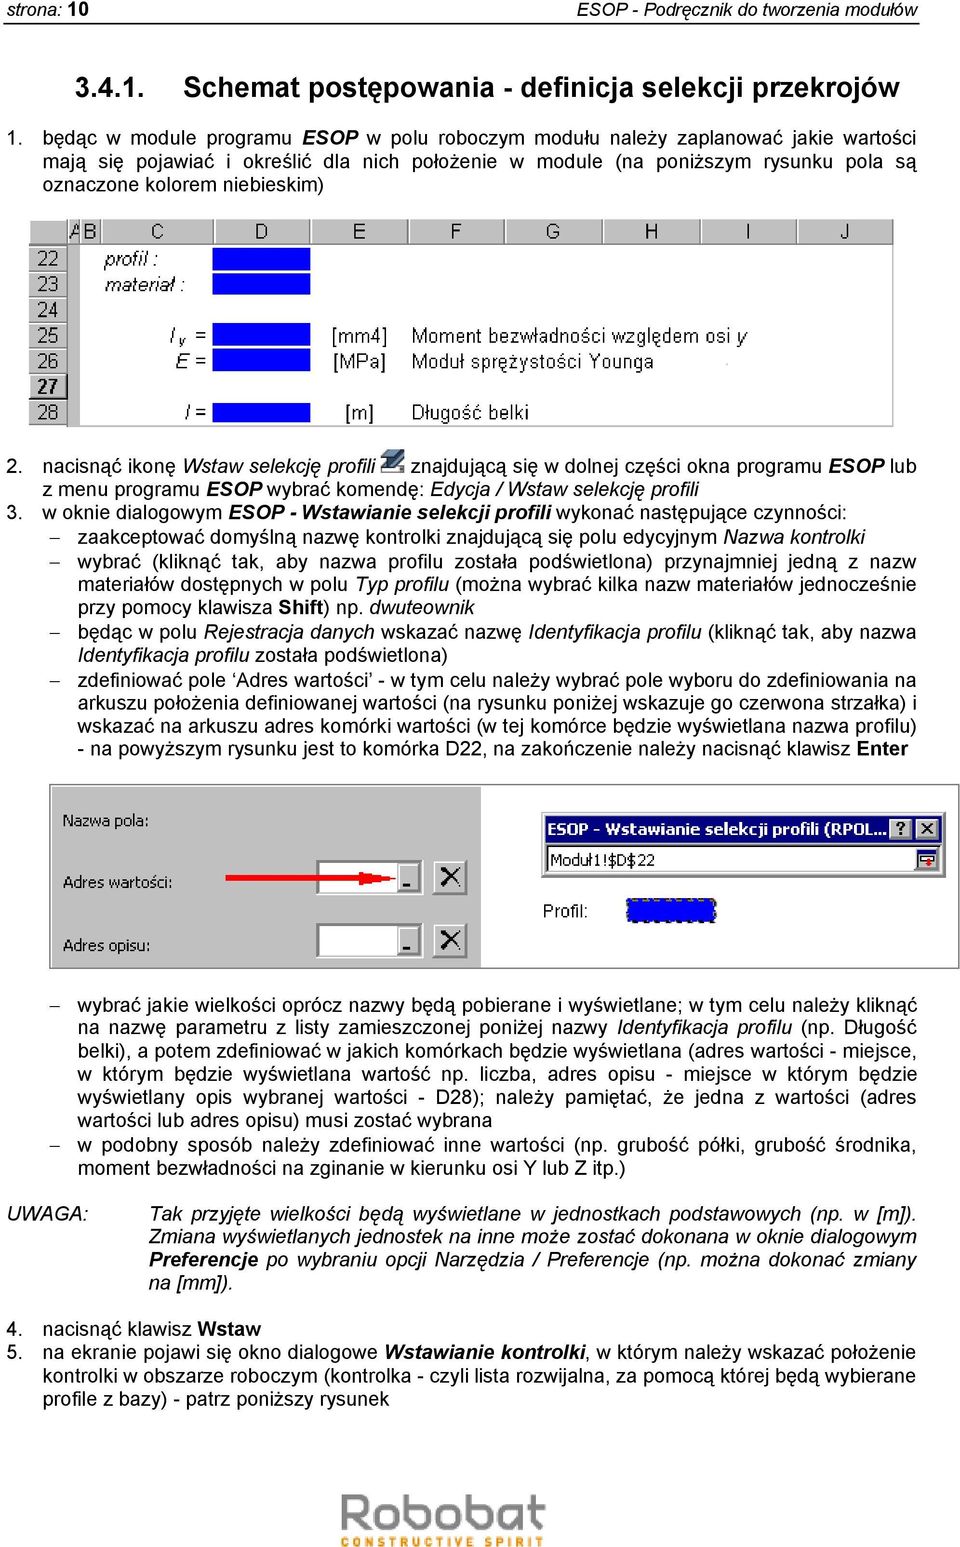 niebieskim) 2. nacisnąć ikonę Wstaw selekcję profili znajdującą się w dolnej części okna programu ESOP lub z menu programu ESOP wybrać komendę: Edycja / Wstaw selekcję profili 3.